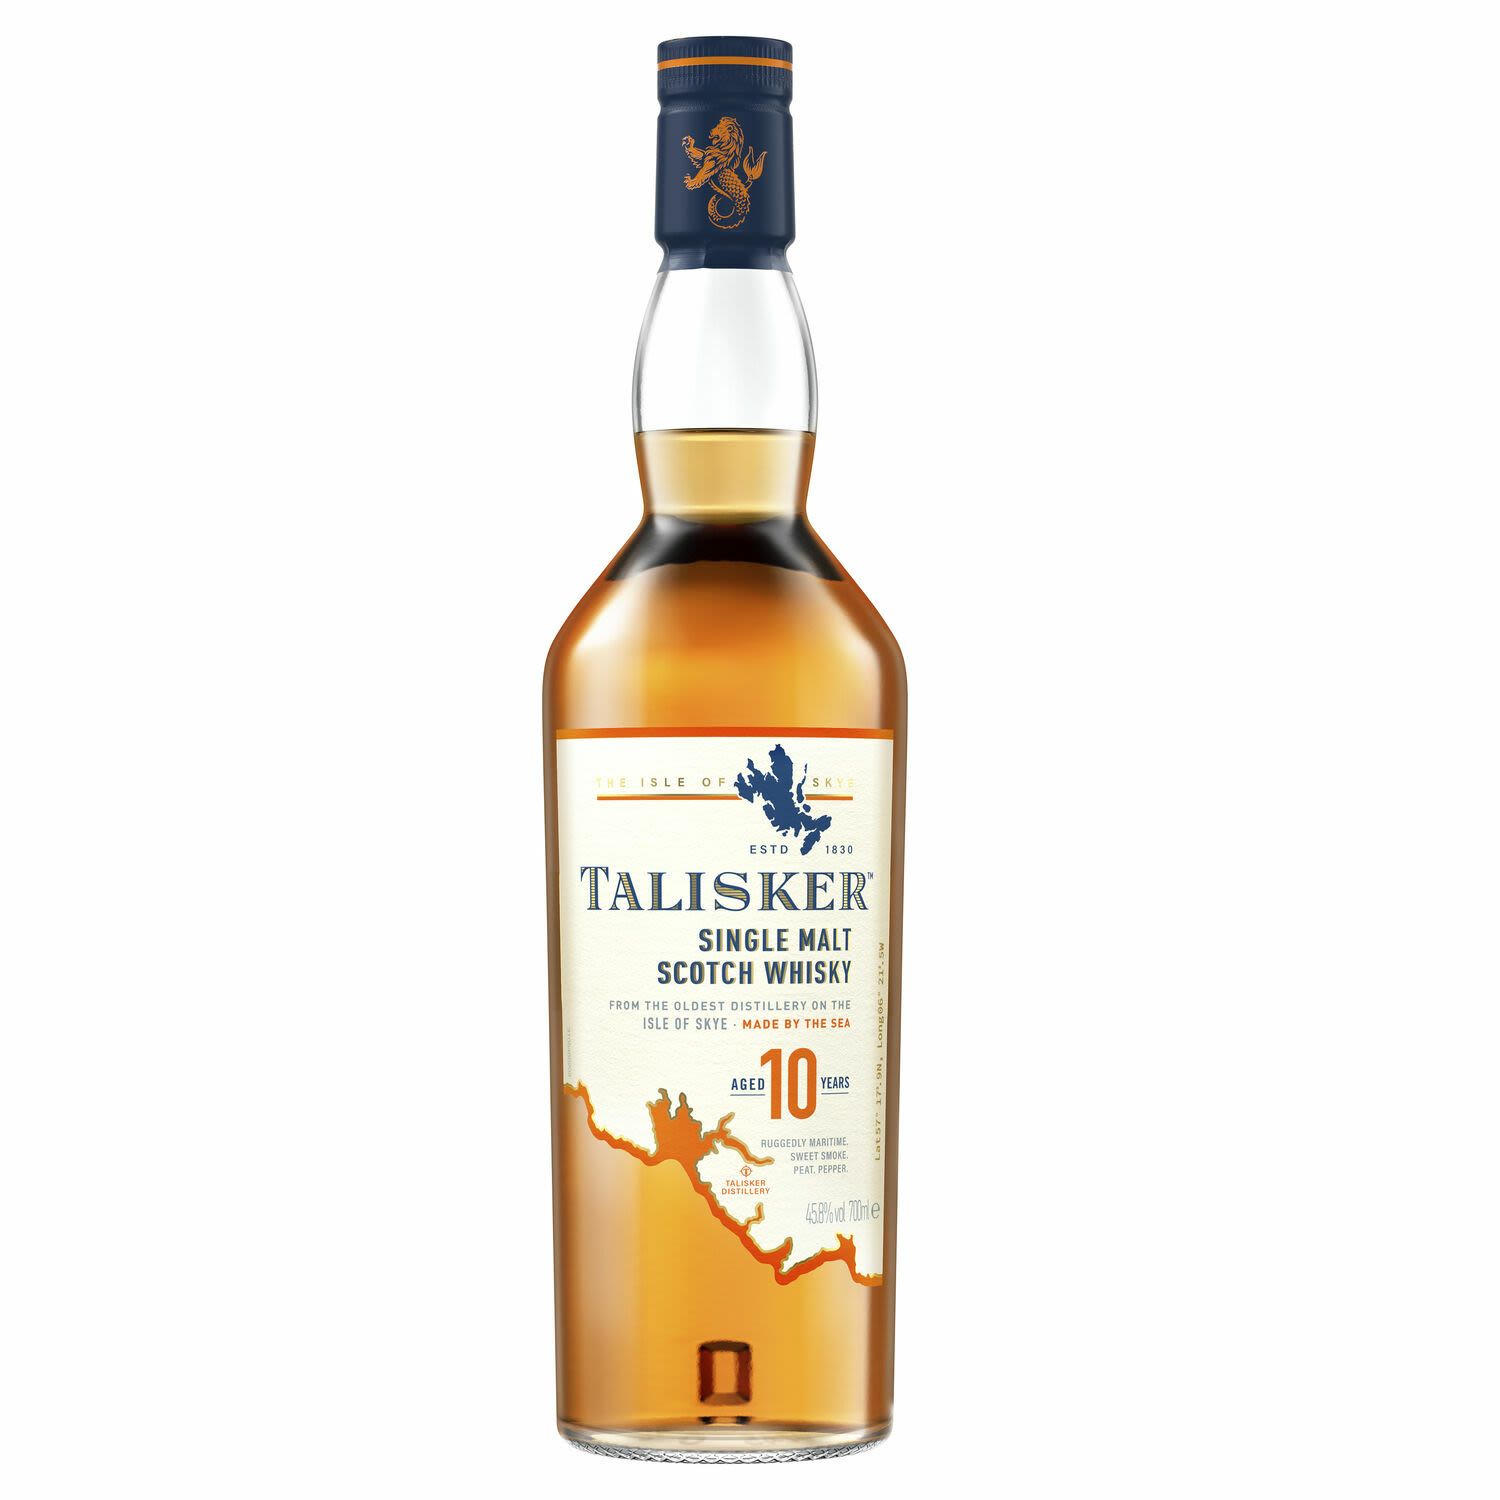 Talisker Single Malt Scotch Whisky 10 Year Old 700mL Bottle